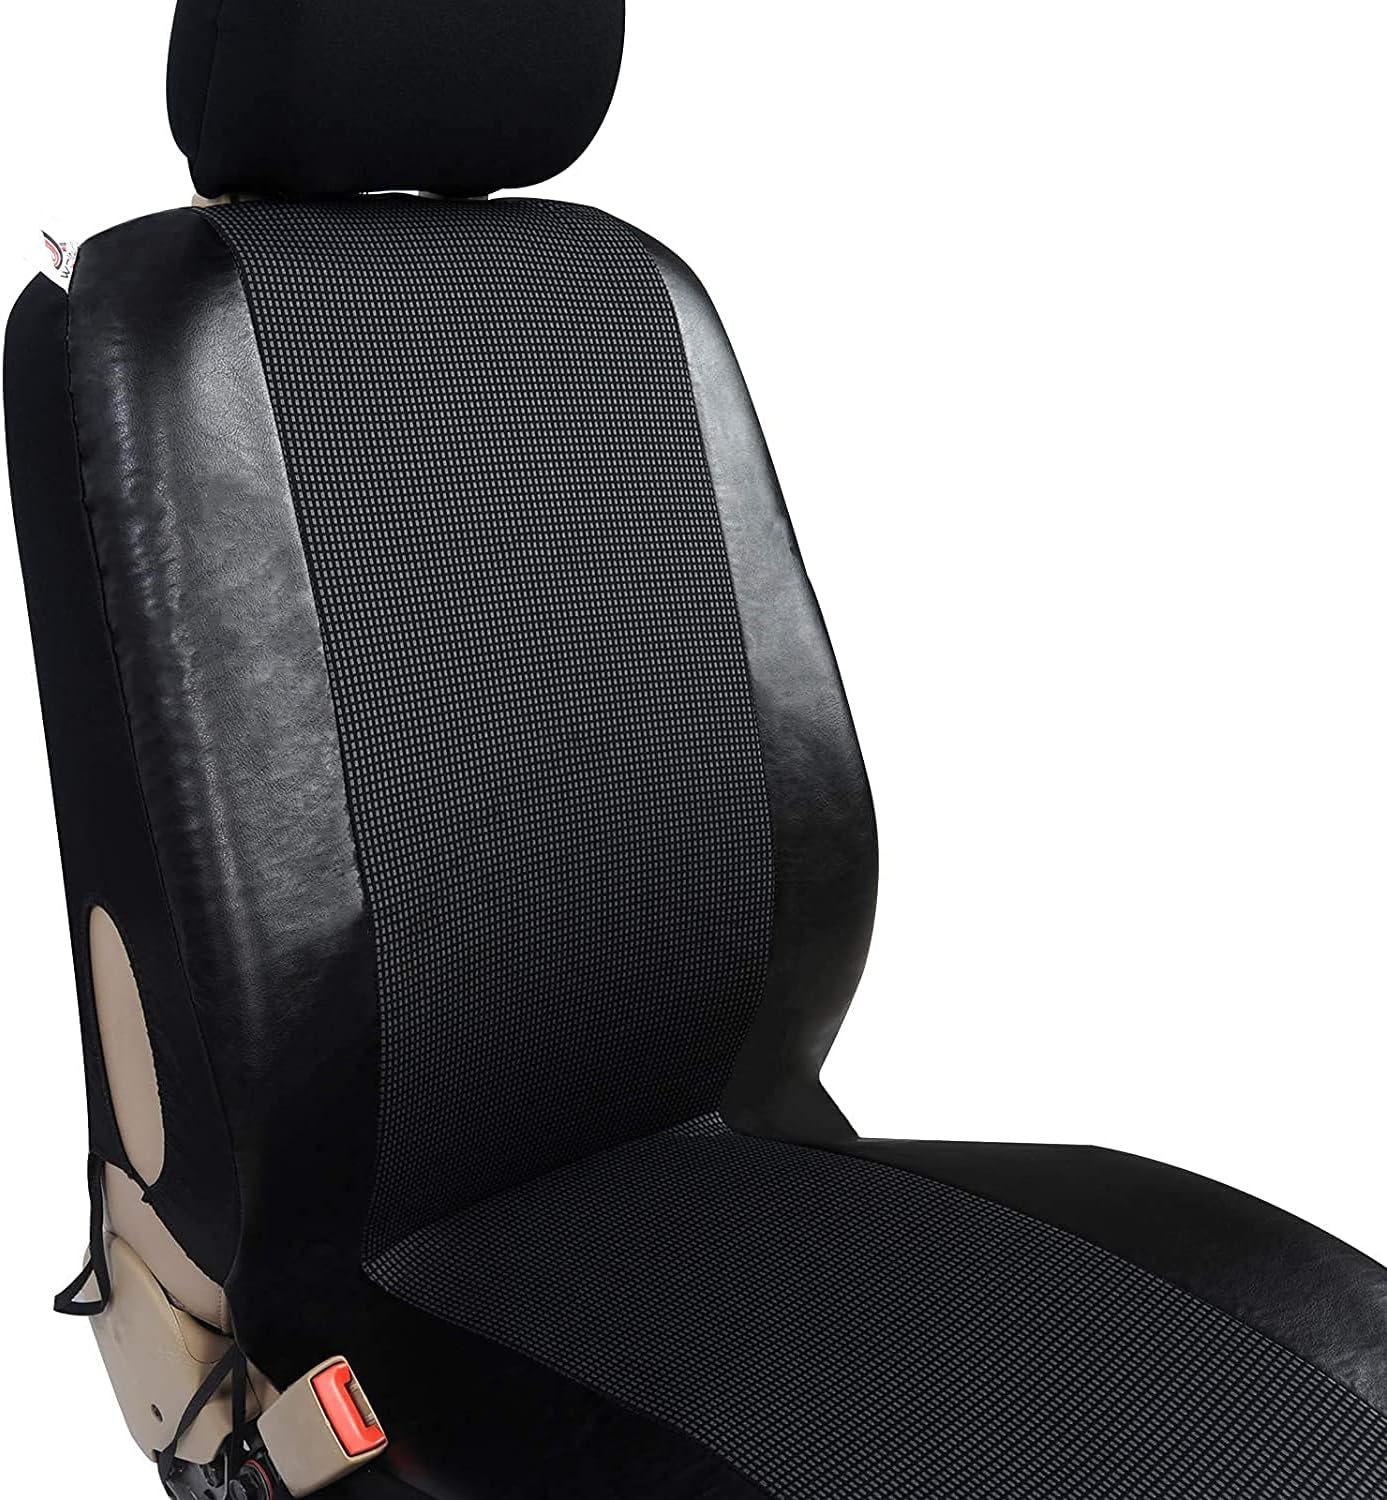 Protezione per sedile auto 135x145 cm in poliestere nero